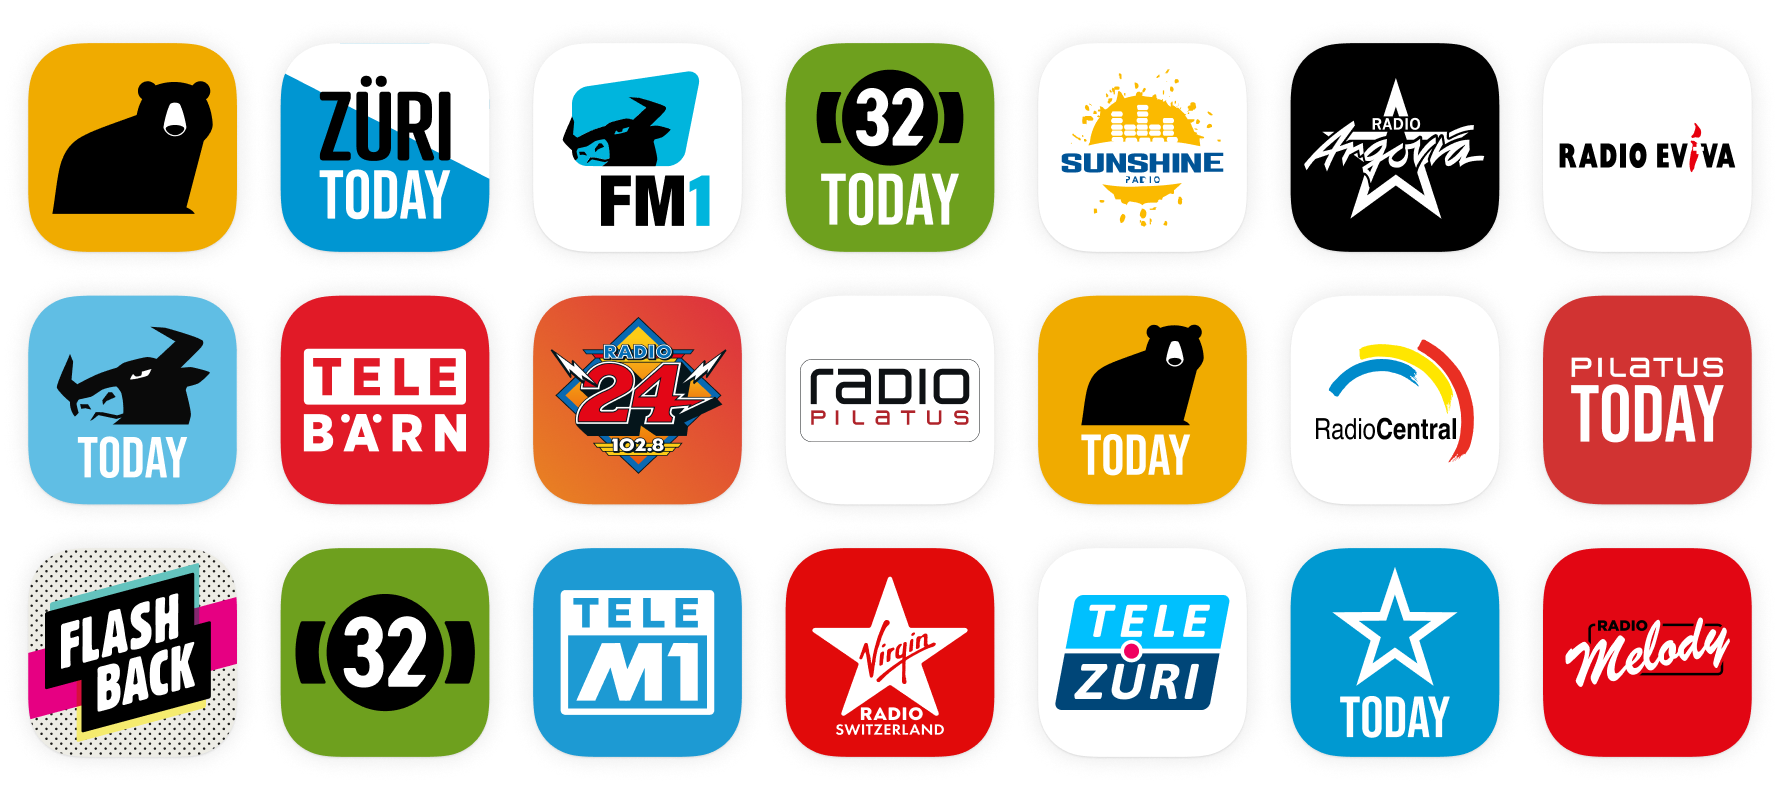 Die Vielzahl an verschiedenen Marken die eigene Radio Apps haben